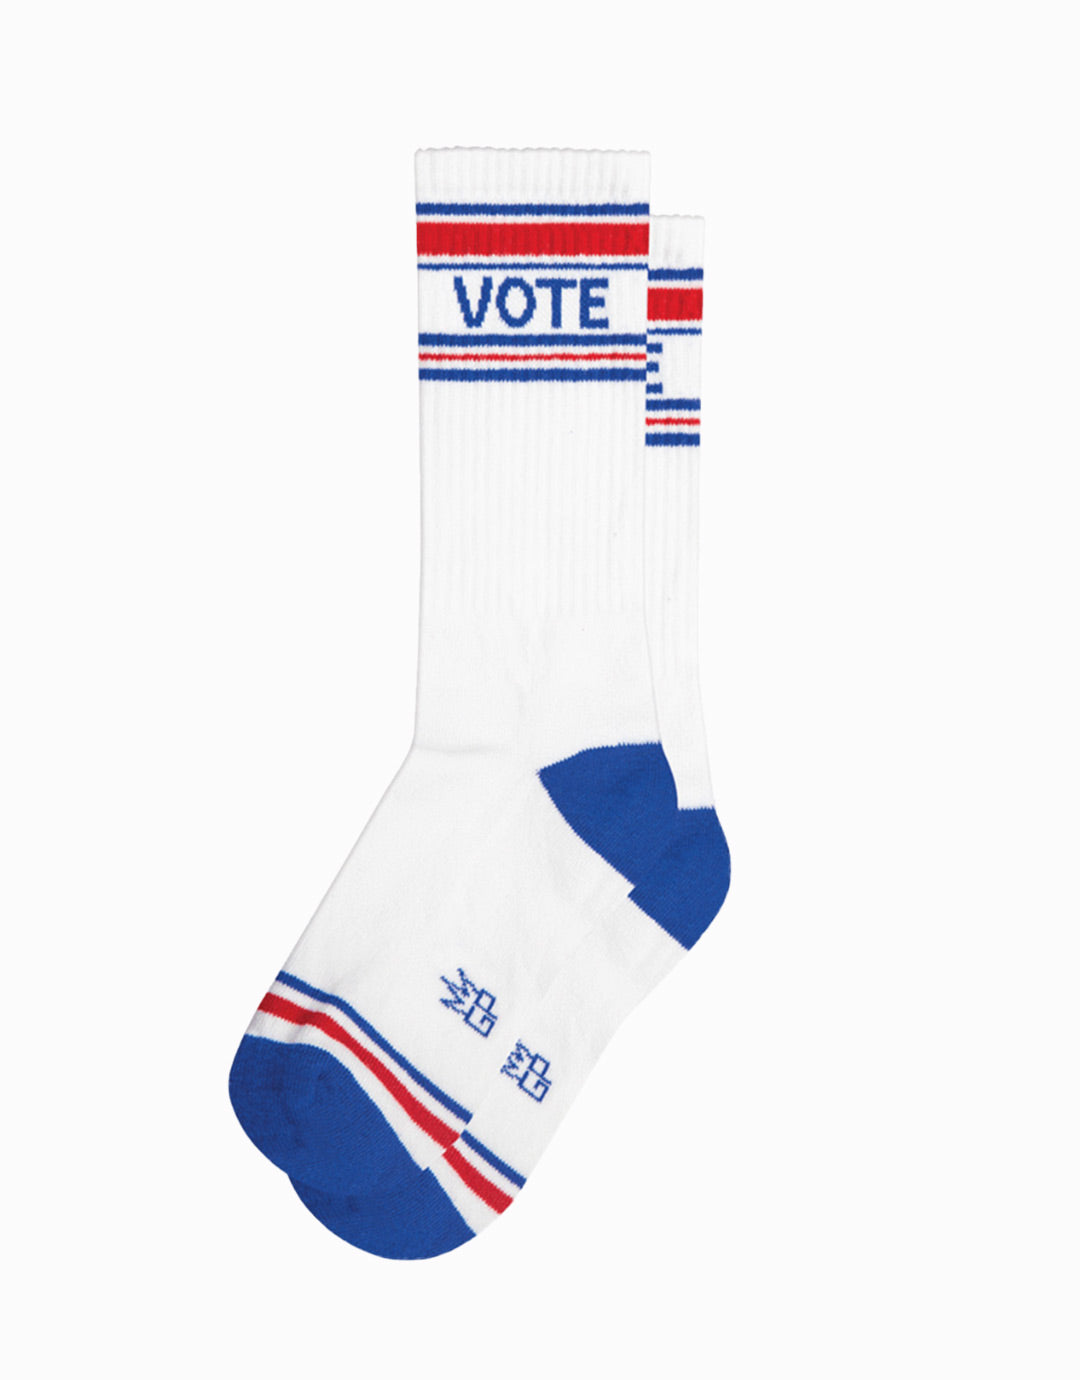 Vote Gym Socks